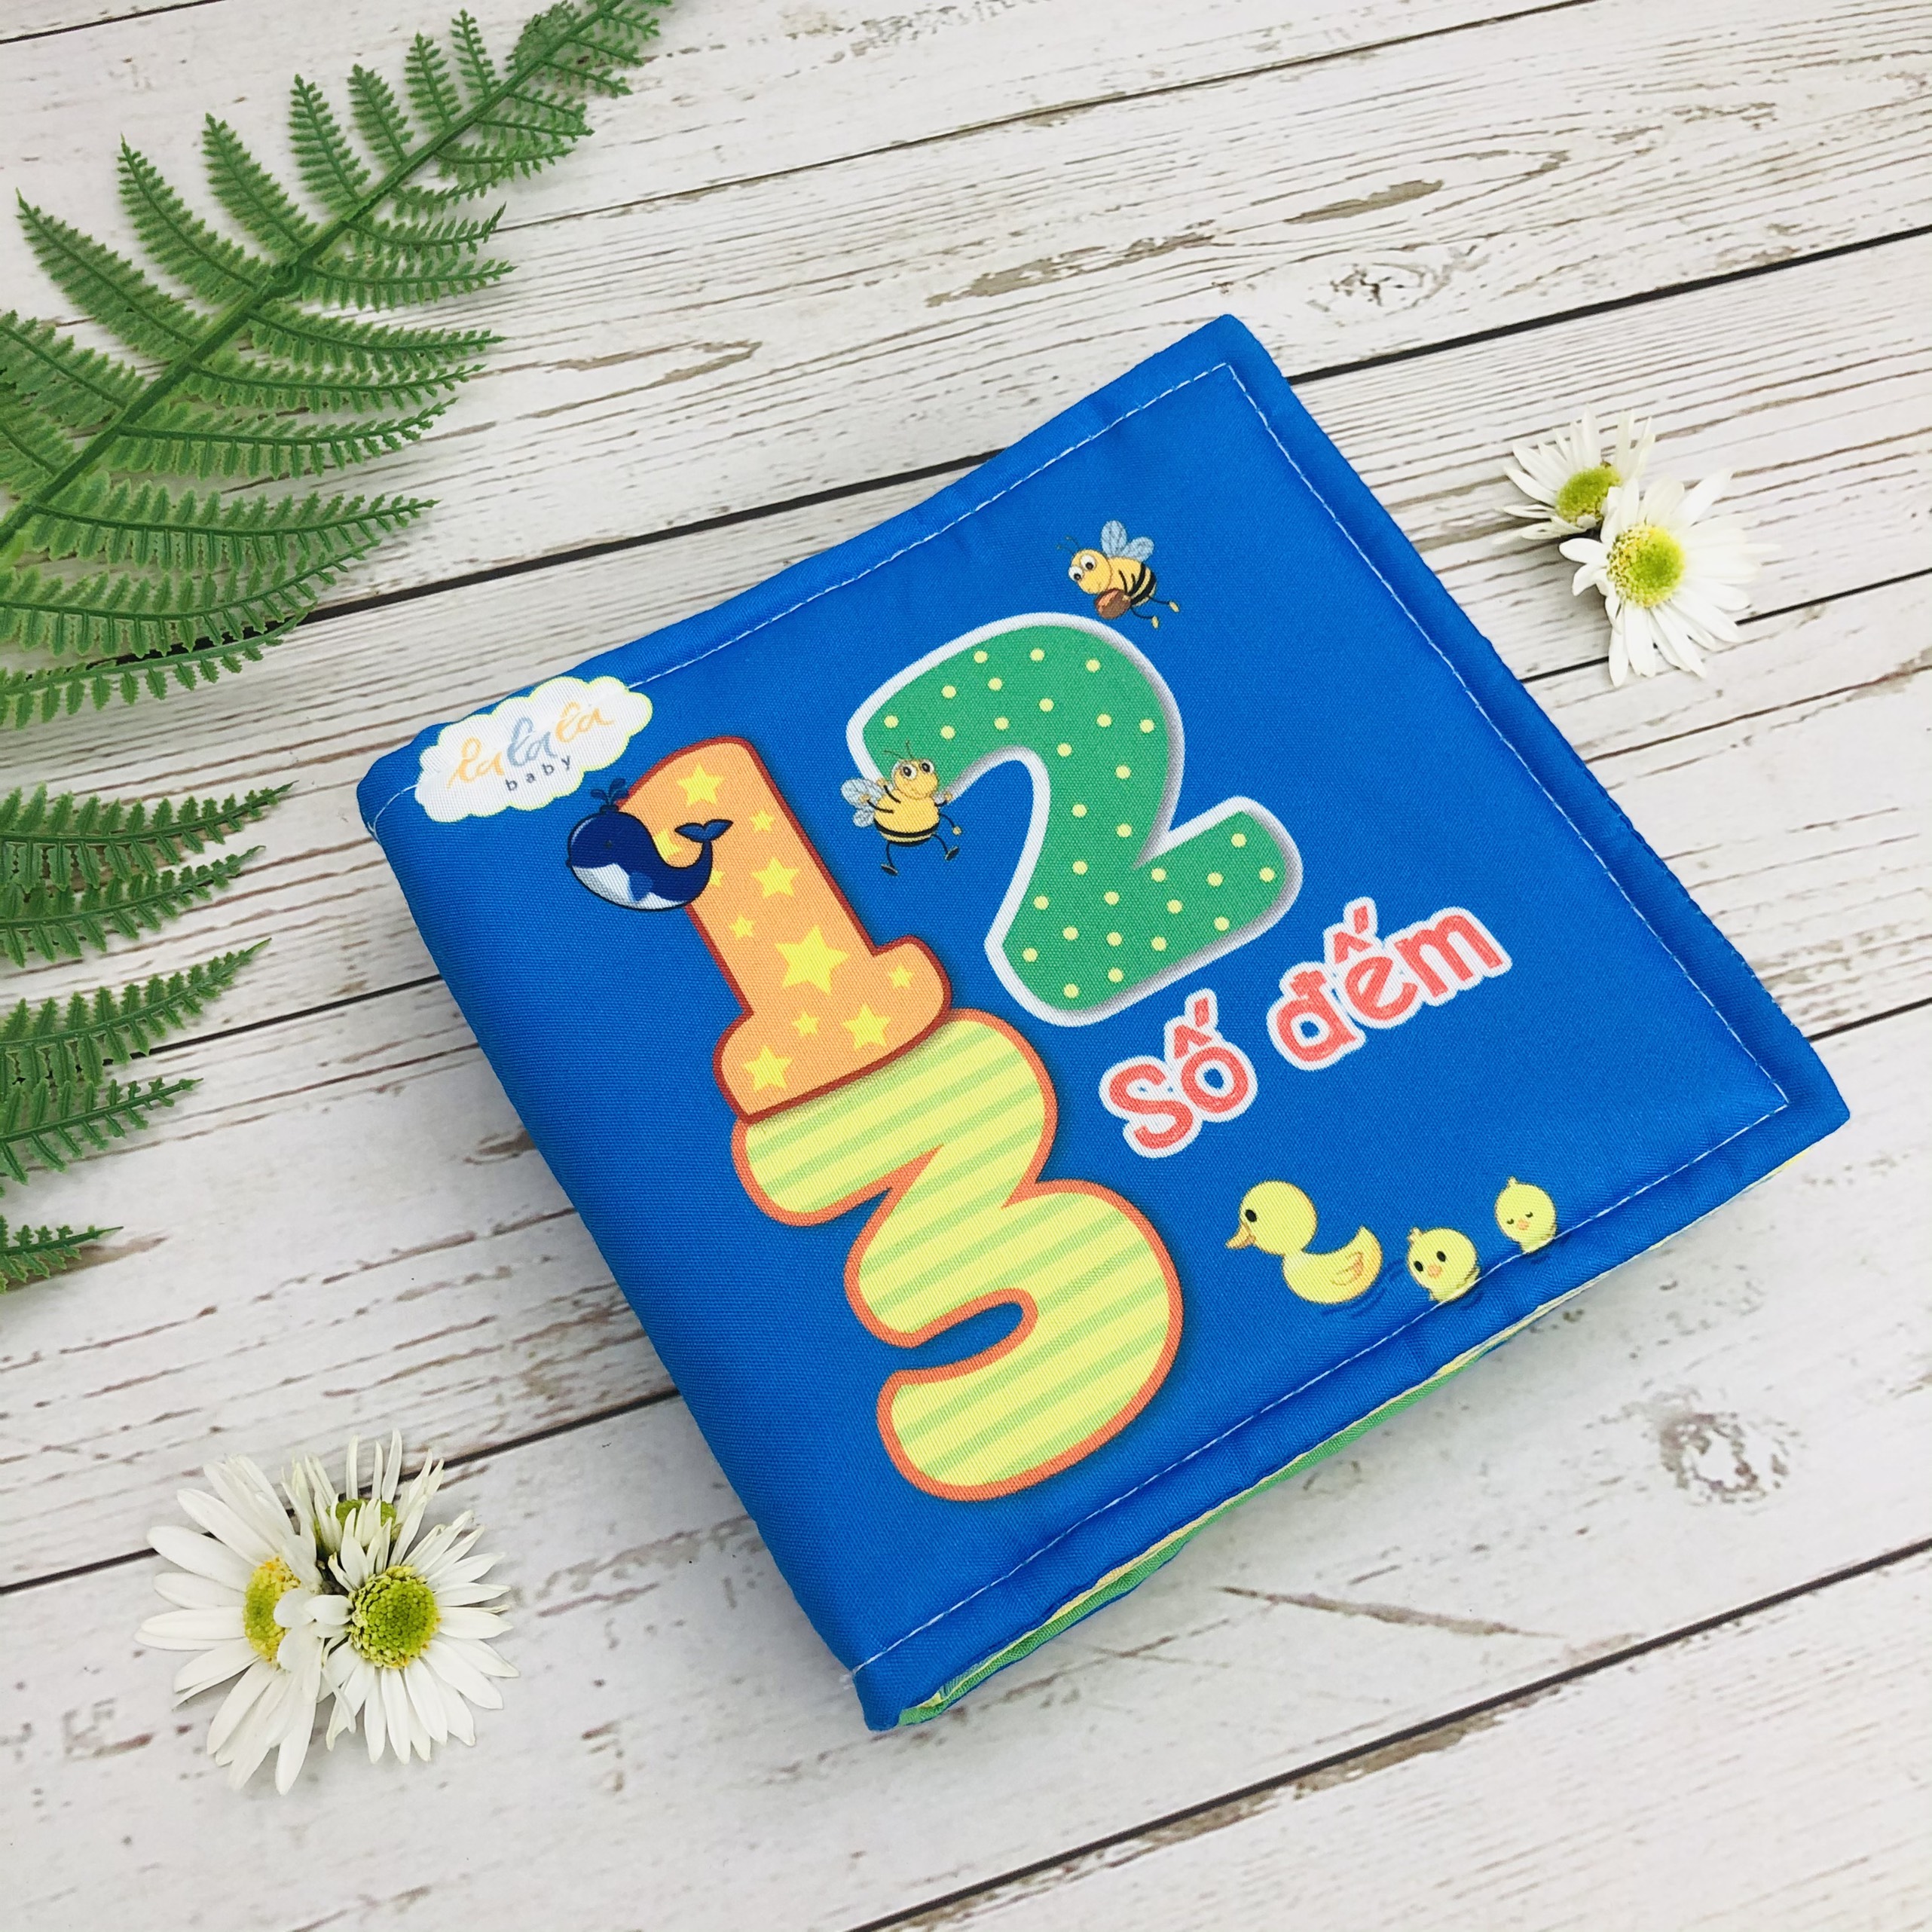 Combo 4 cuốn sách vải Lalala baby (chủ đề Số đếm, Chữ cái, Hình khối, Màu sắc), cung cấp kiến thức cơ bản đầu đời cho bé, Sách tương tác sột soạt, Màu sắc rõ nét, Dành cho bé từ 0-3 tuổi, CHÍNH HÃNG made in Vietnam